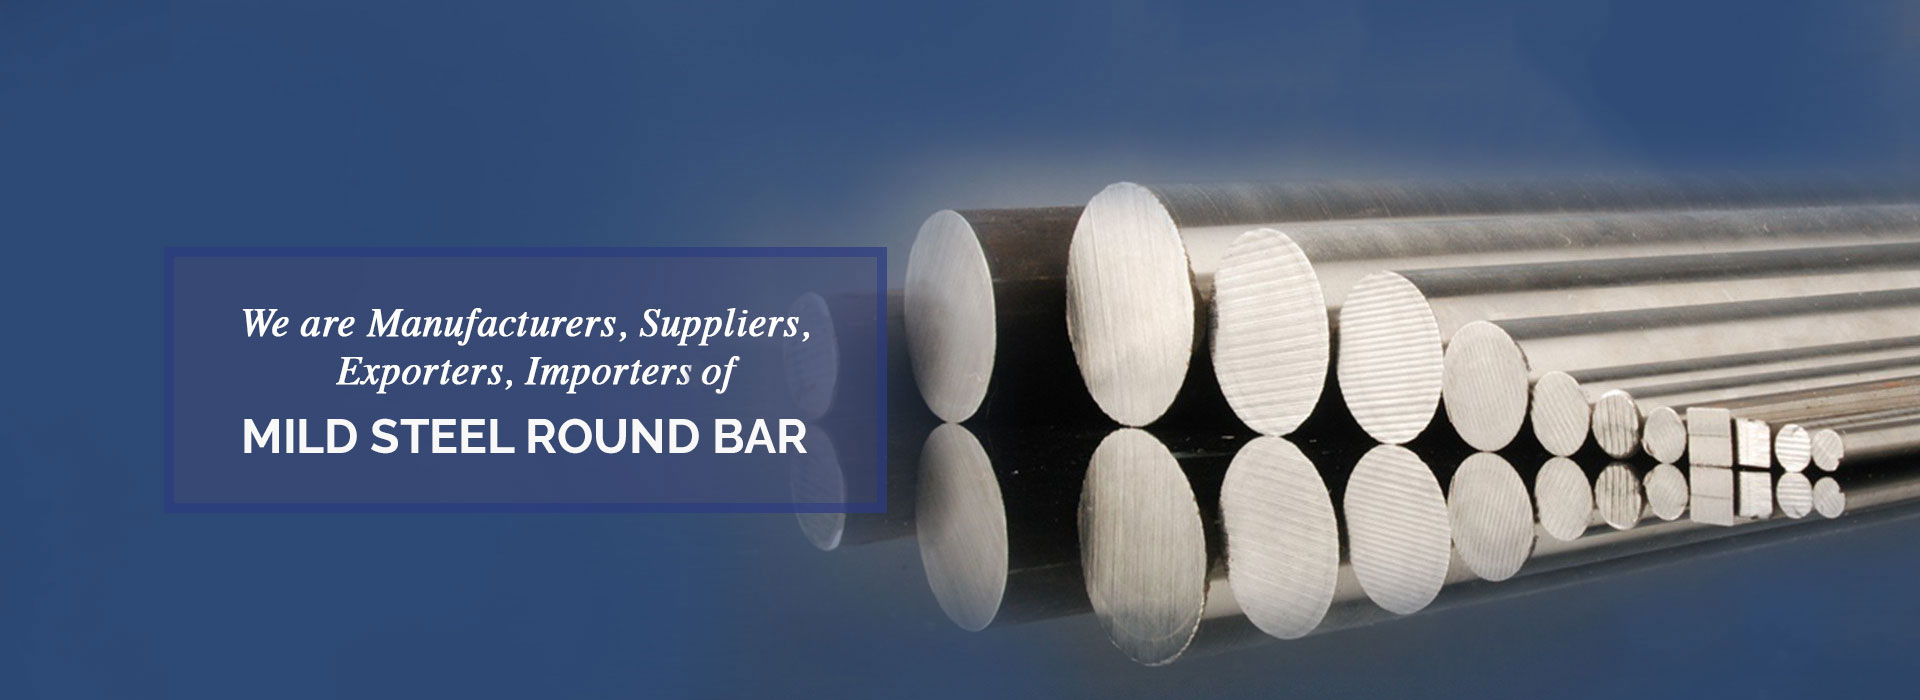 Mild Steel Round Bar Manufacturers in Canada